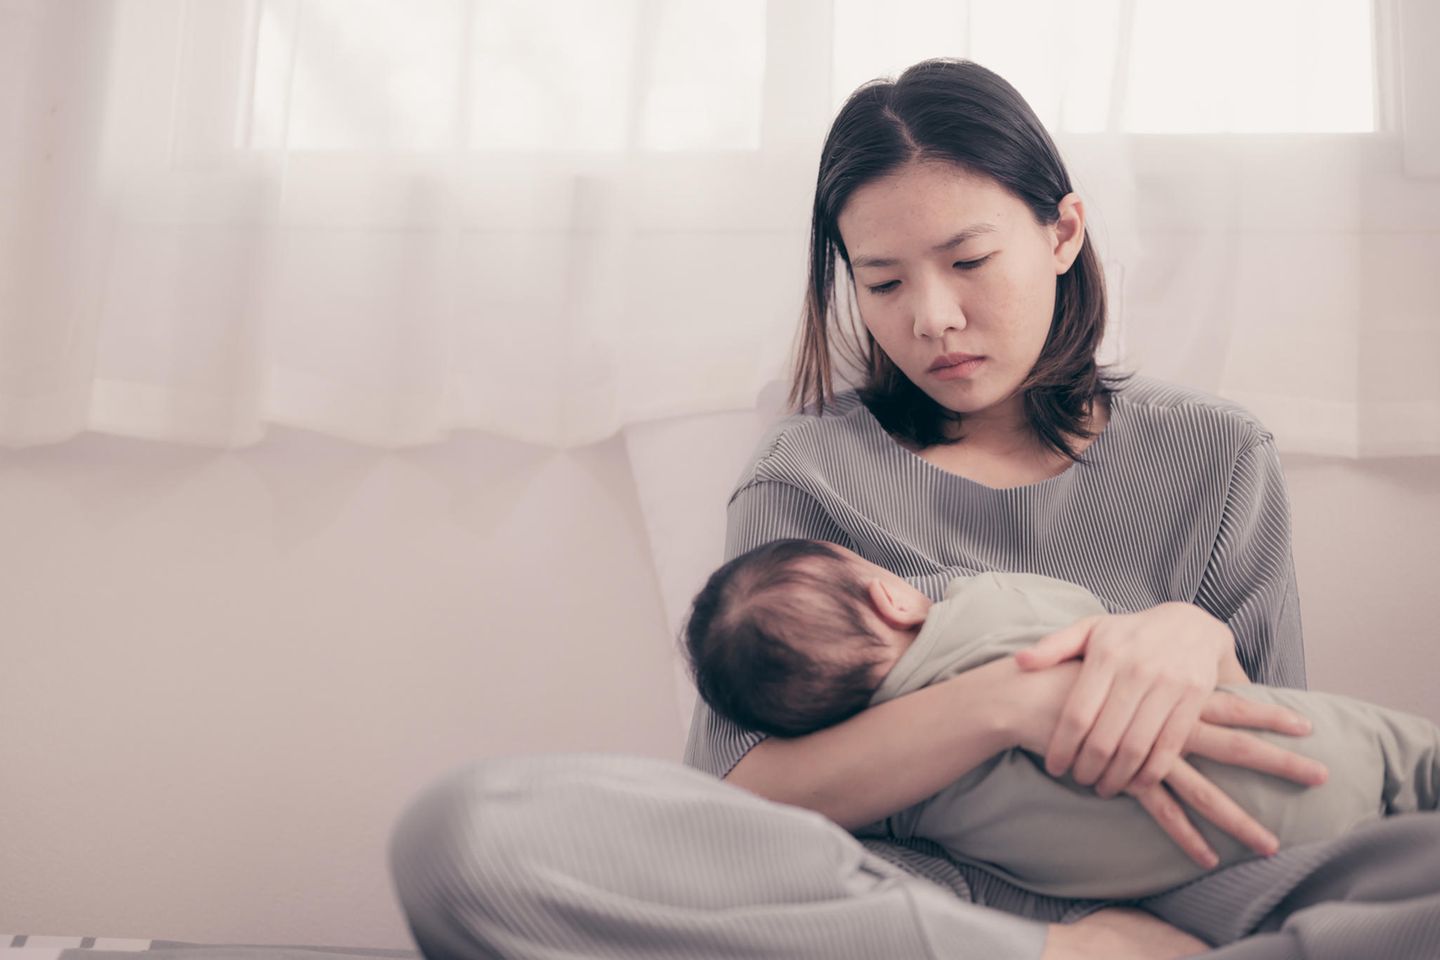 Wochenbettdepression: Mutter guckt ihr Baby traurig an